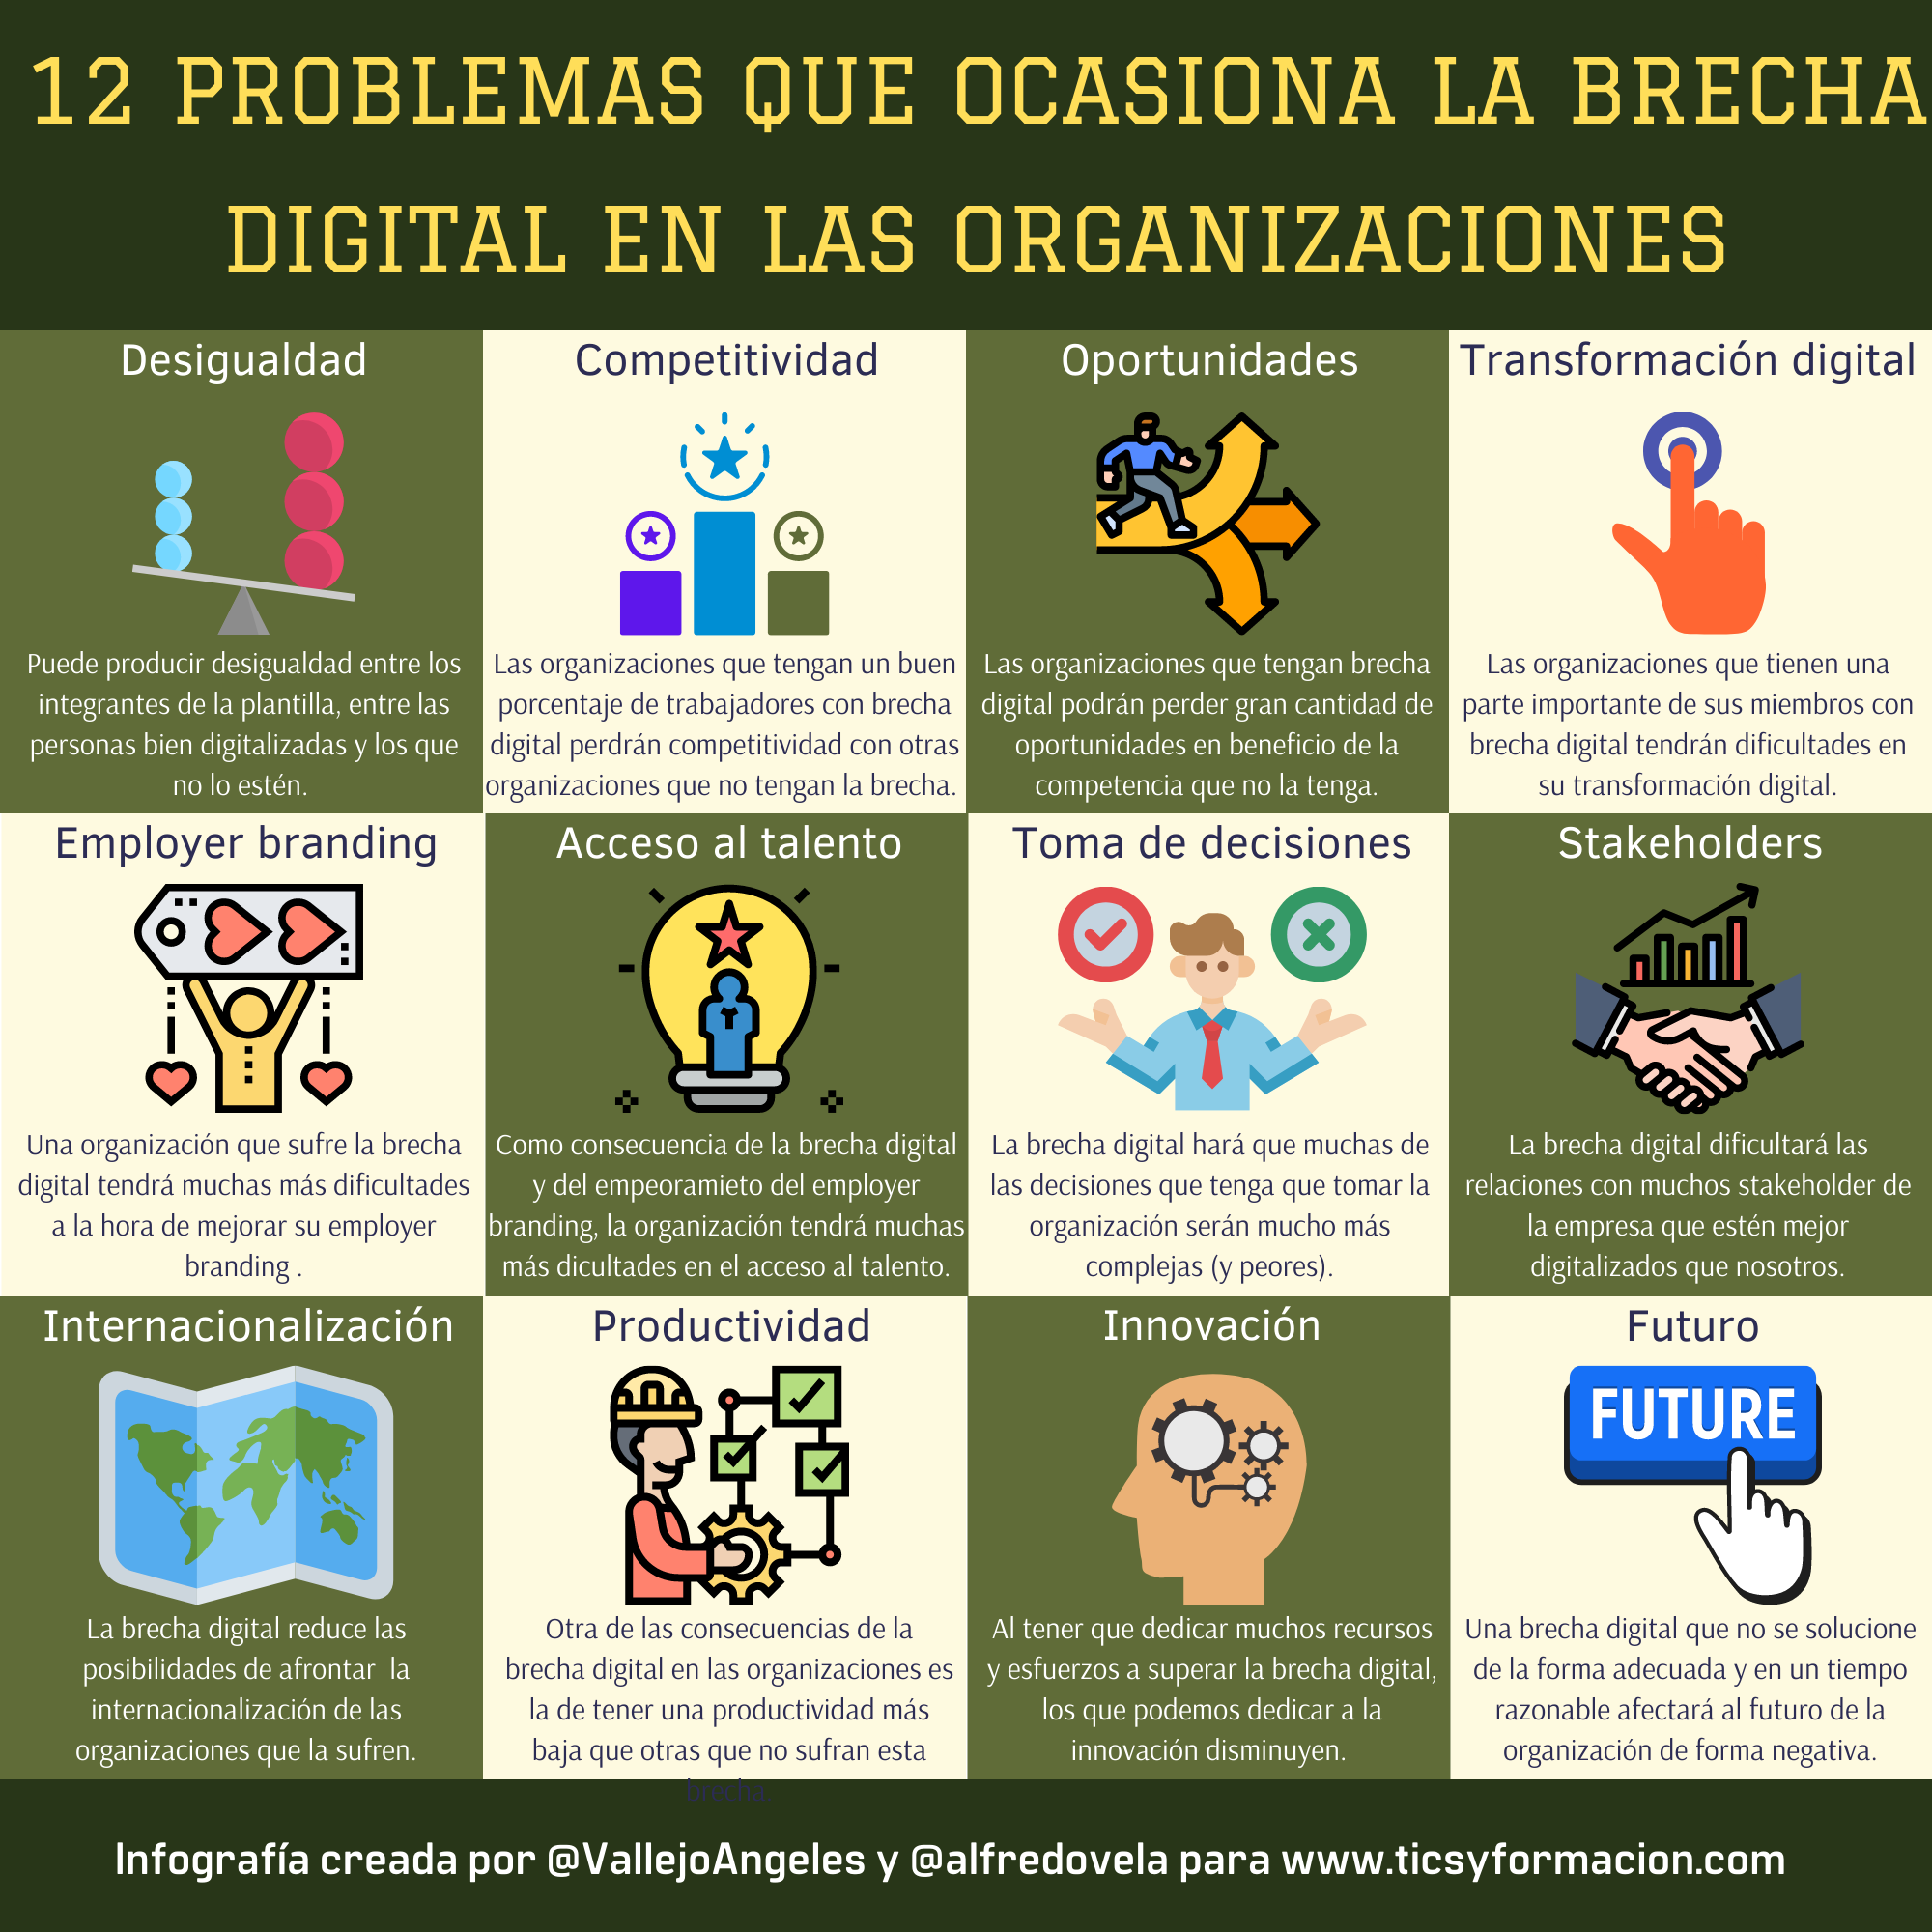 12 problemas que ocasiona la Brecha Digital en las organizaciones #infografia #brechadigital #rrhh